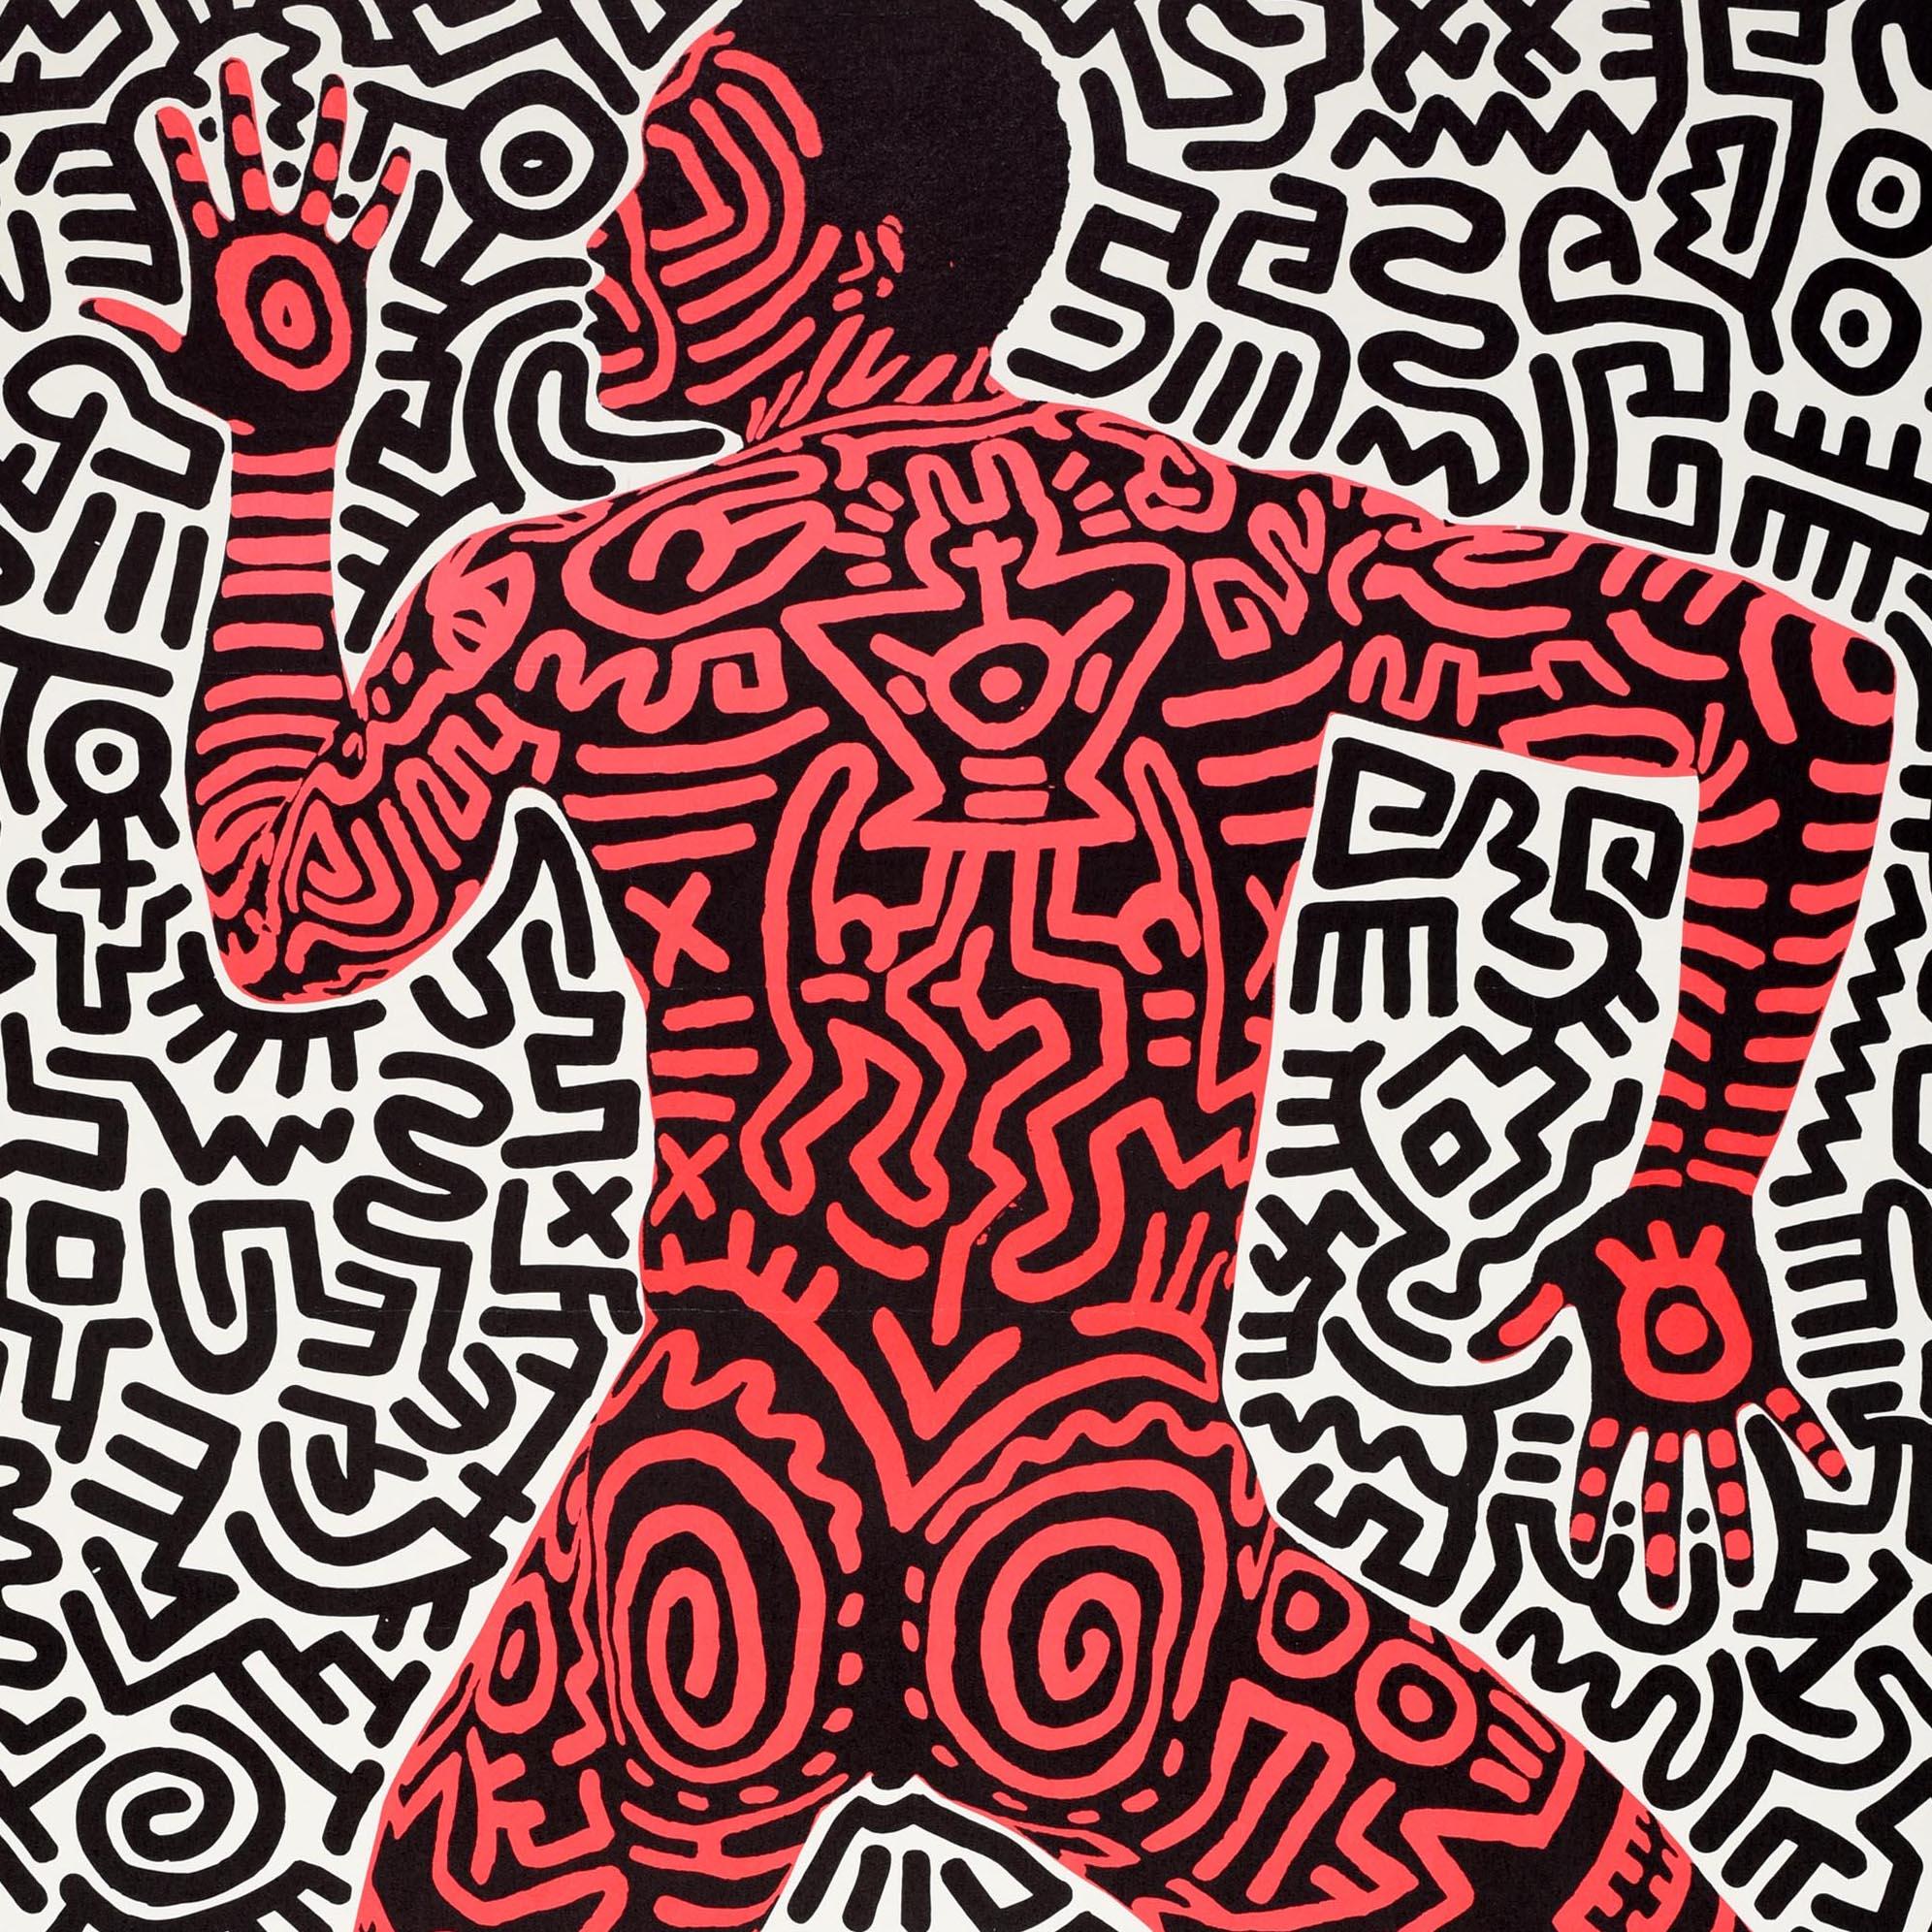 Affiche publicitaire originale d'époque pour une exposition de Keith Haring - Into 84 - qui s'est tenue à la Tony Shafrazi Gallery à New York du 3 décembre au 7 janvier. Grand dessin de l'artiste et activiste social américain Keith Haring